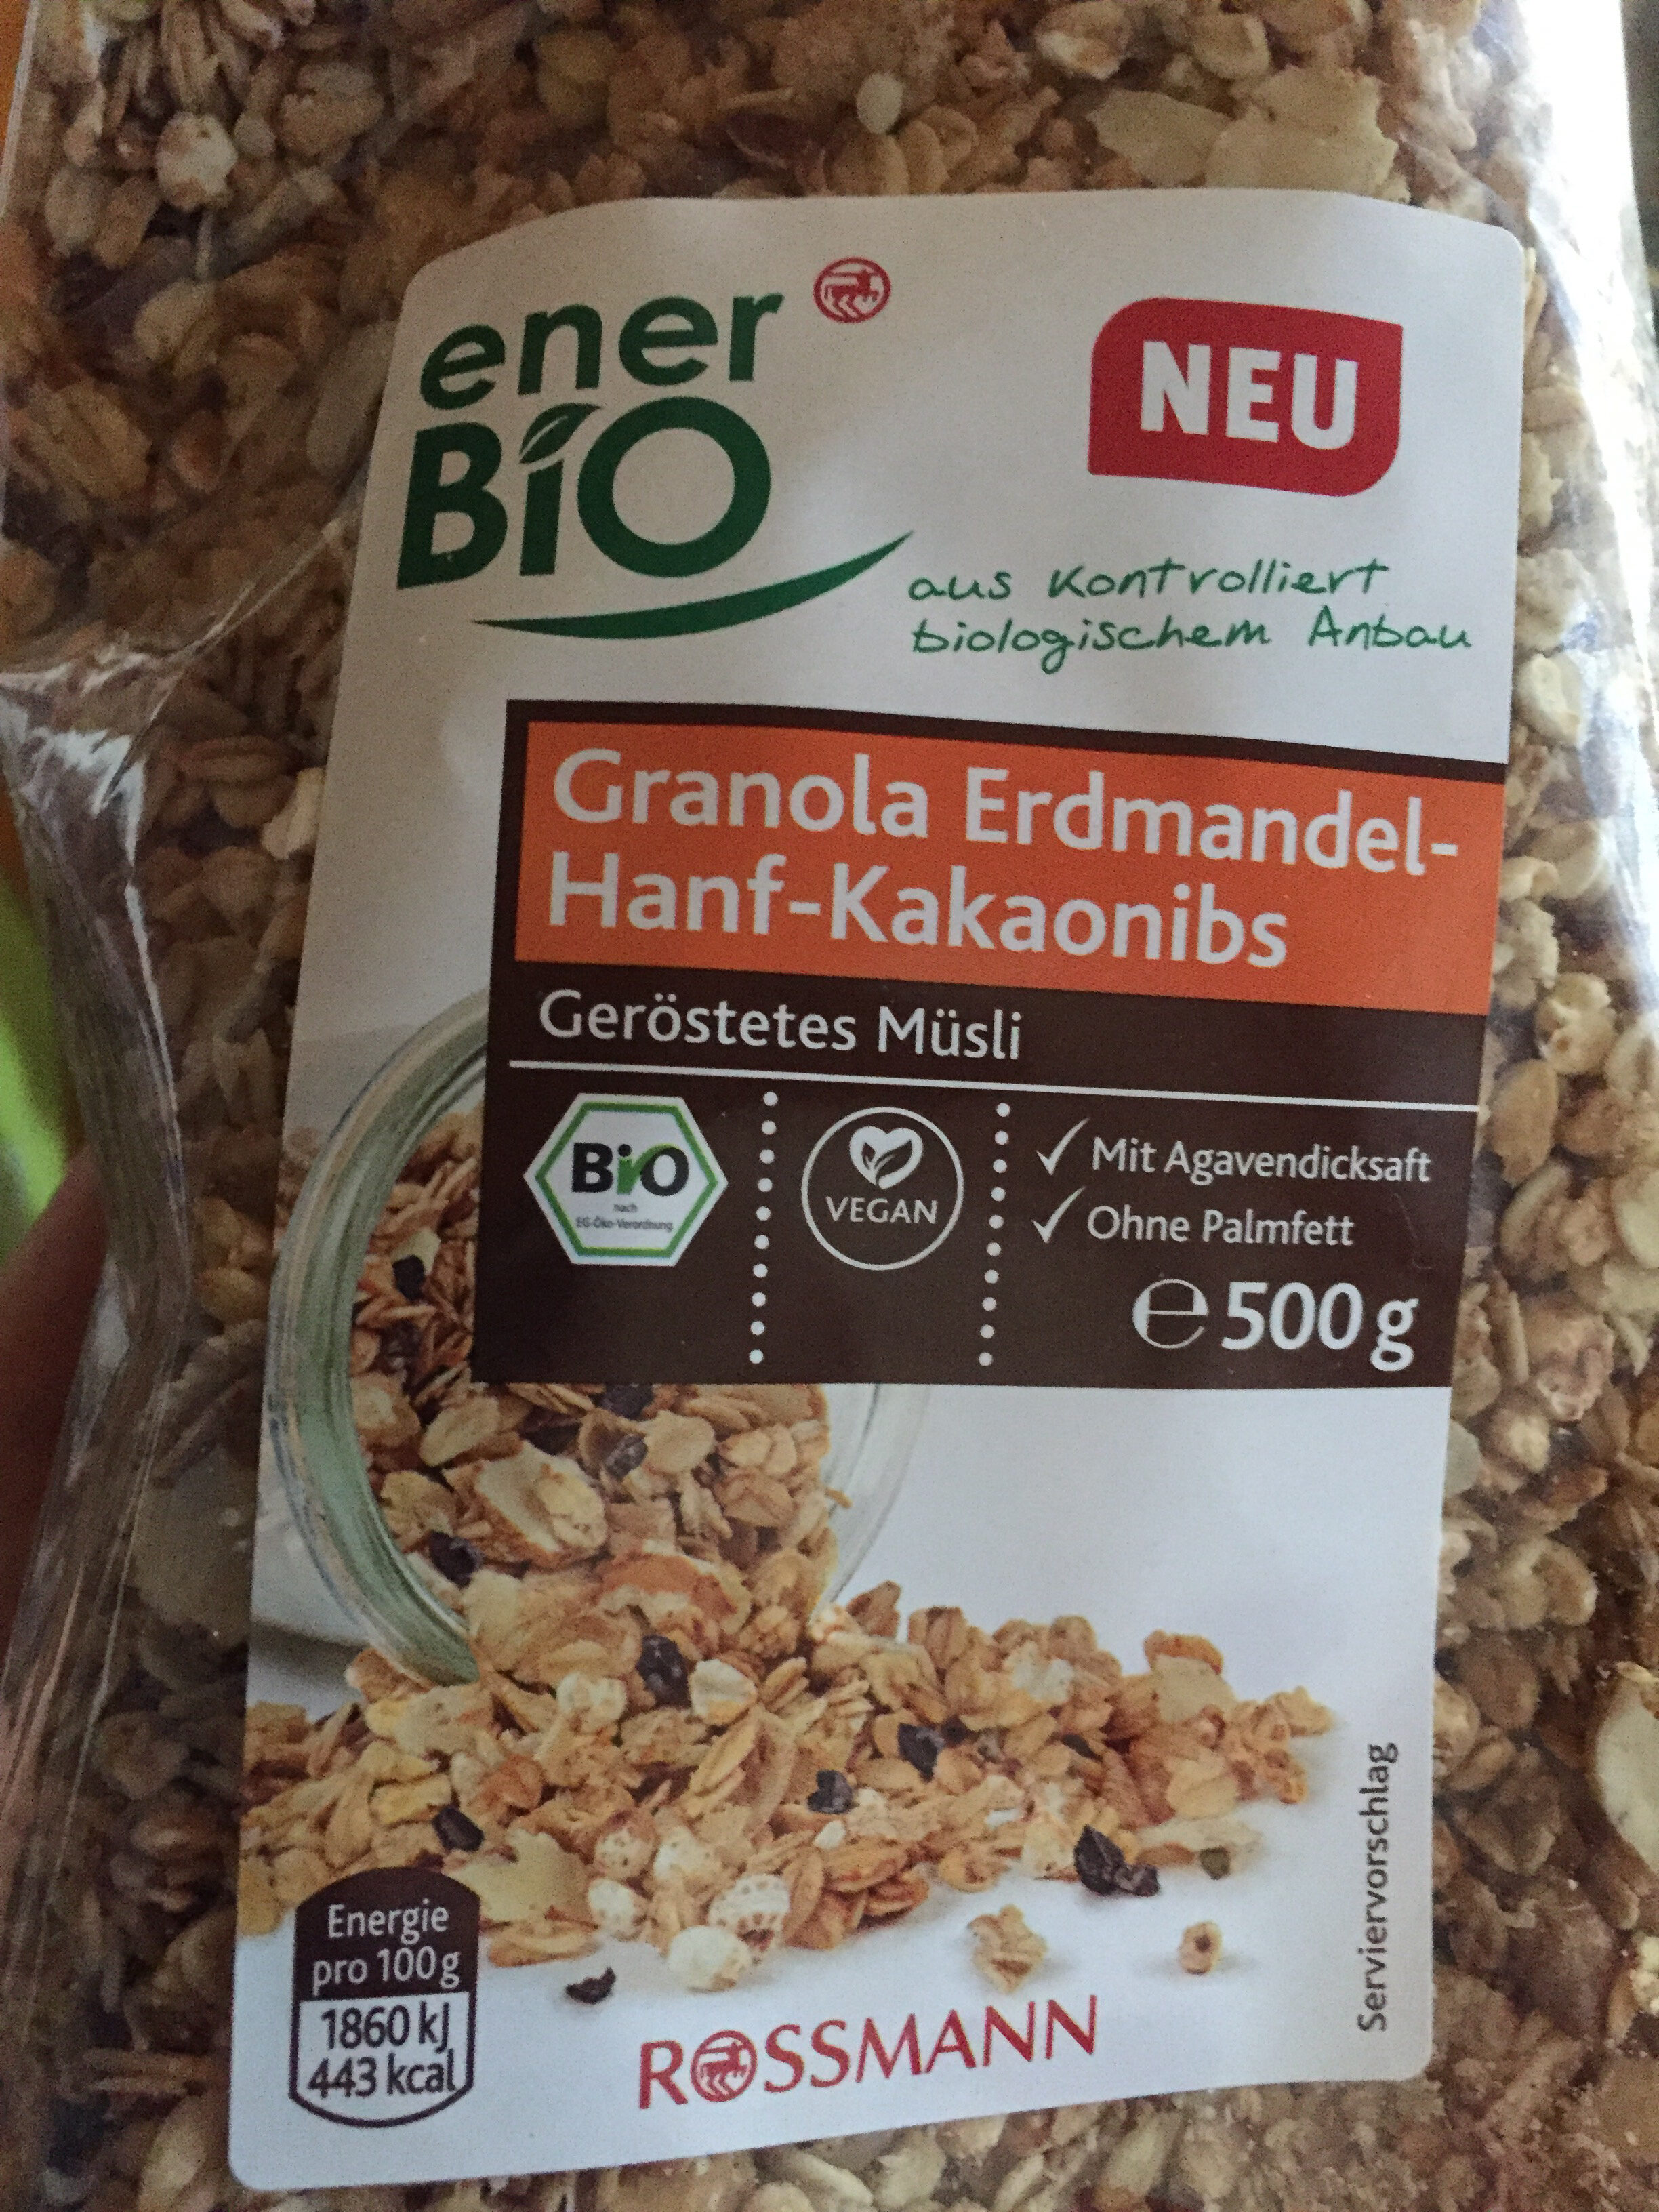 Granola Erdmandel-Hanf-Kakaonibs - Product - de